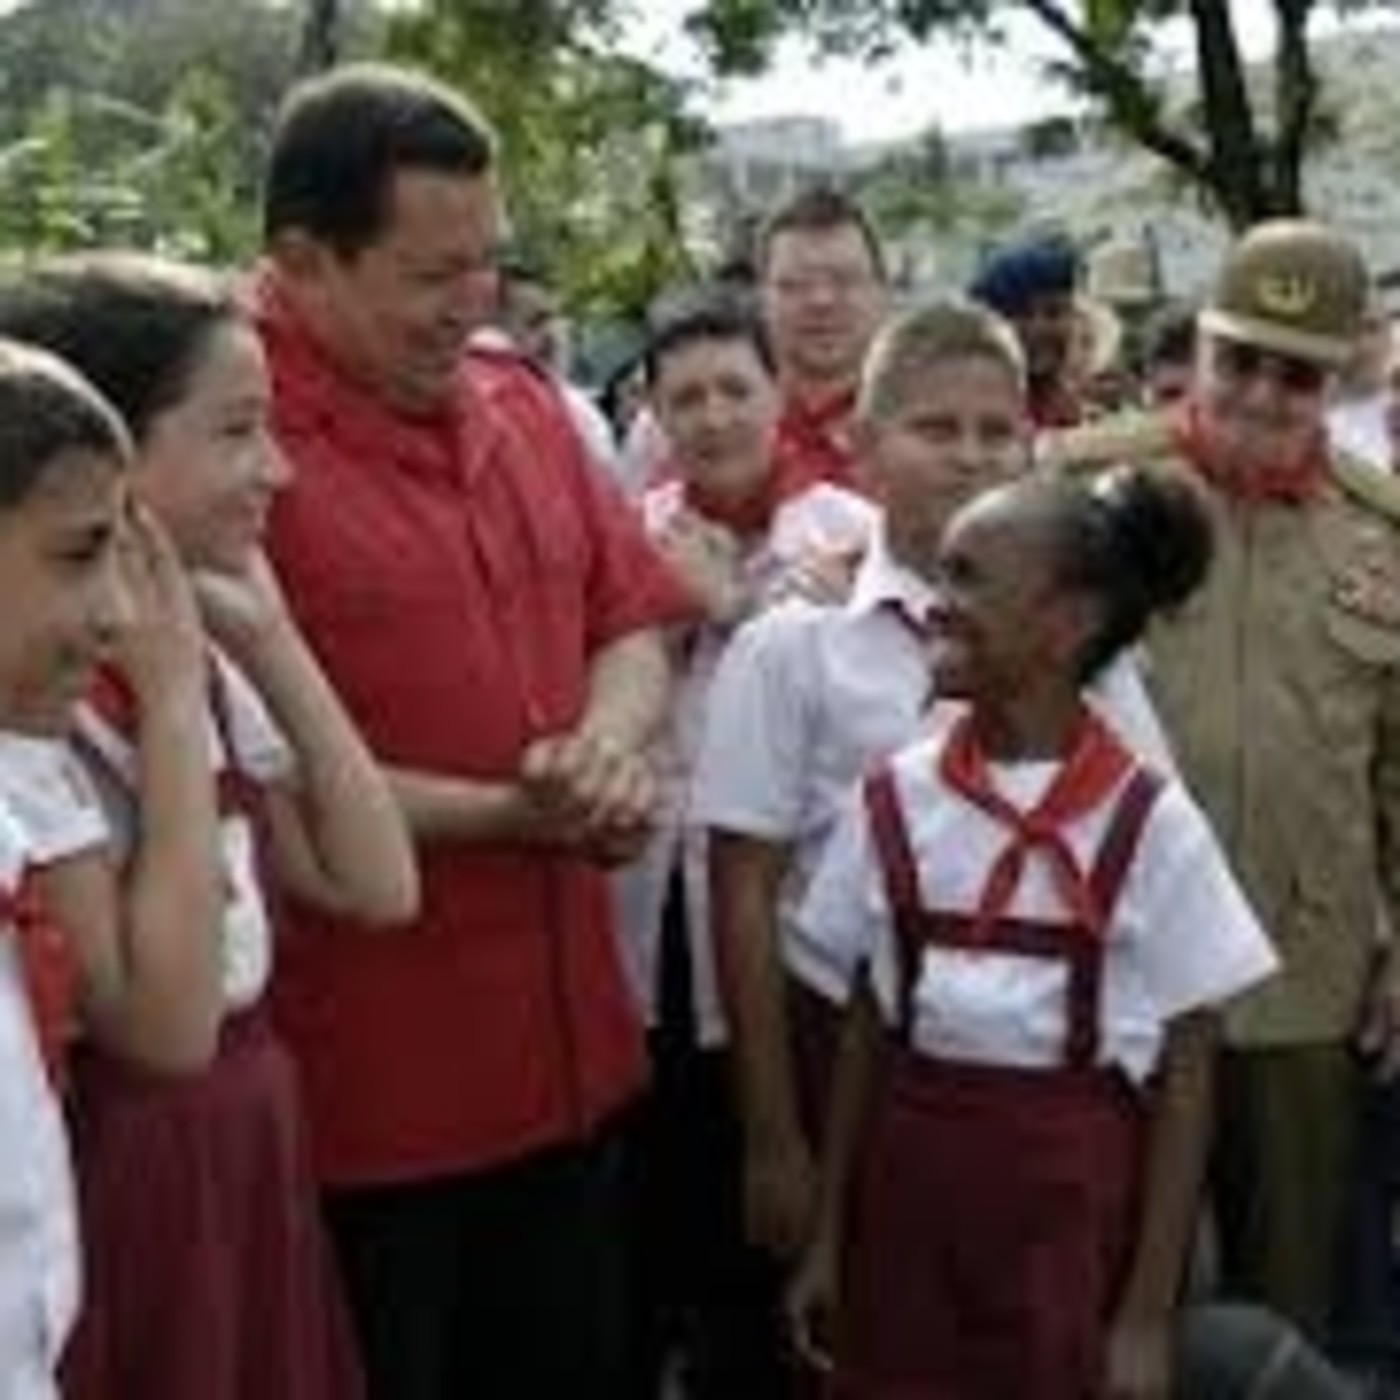 Rememoran impronta de Chávez a 6 años de su partid